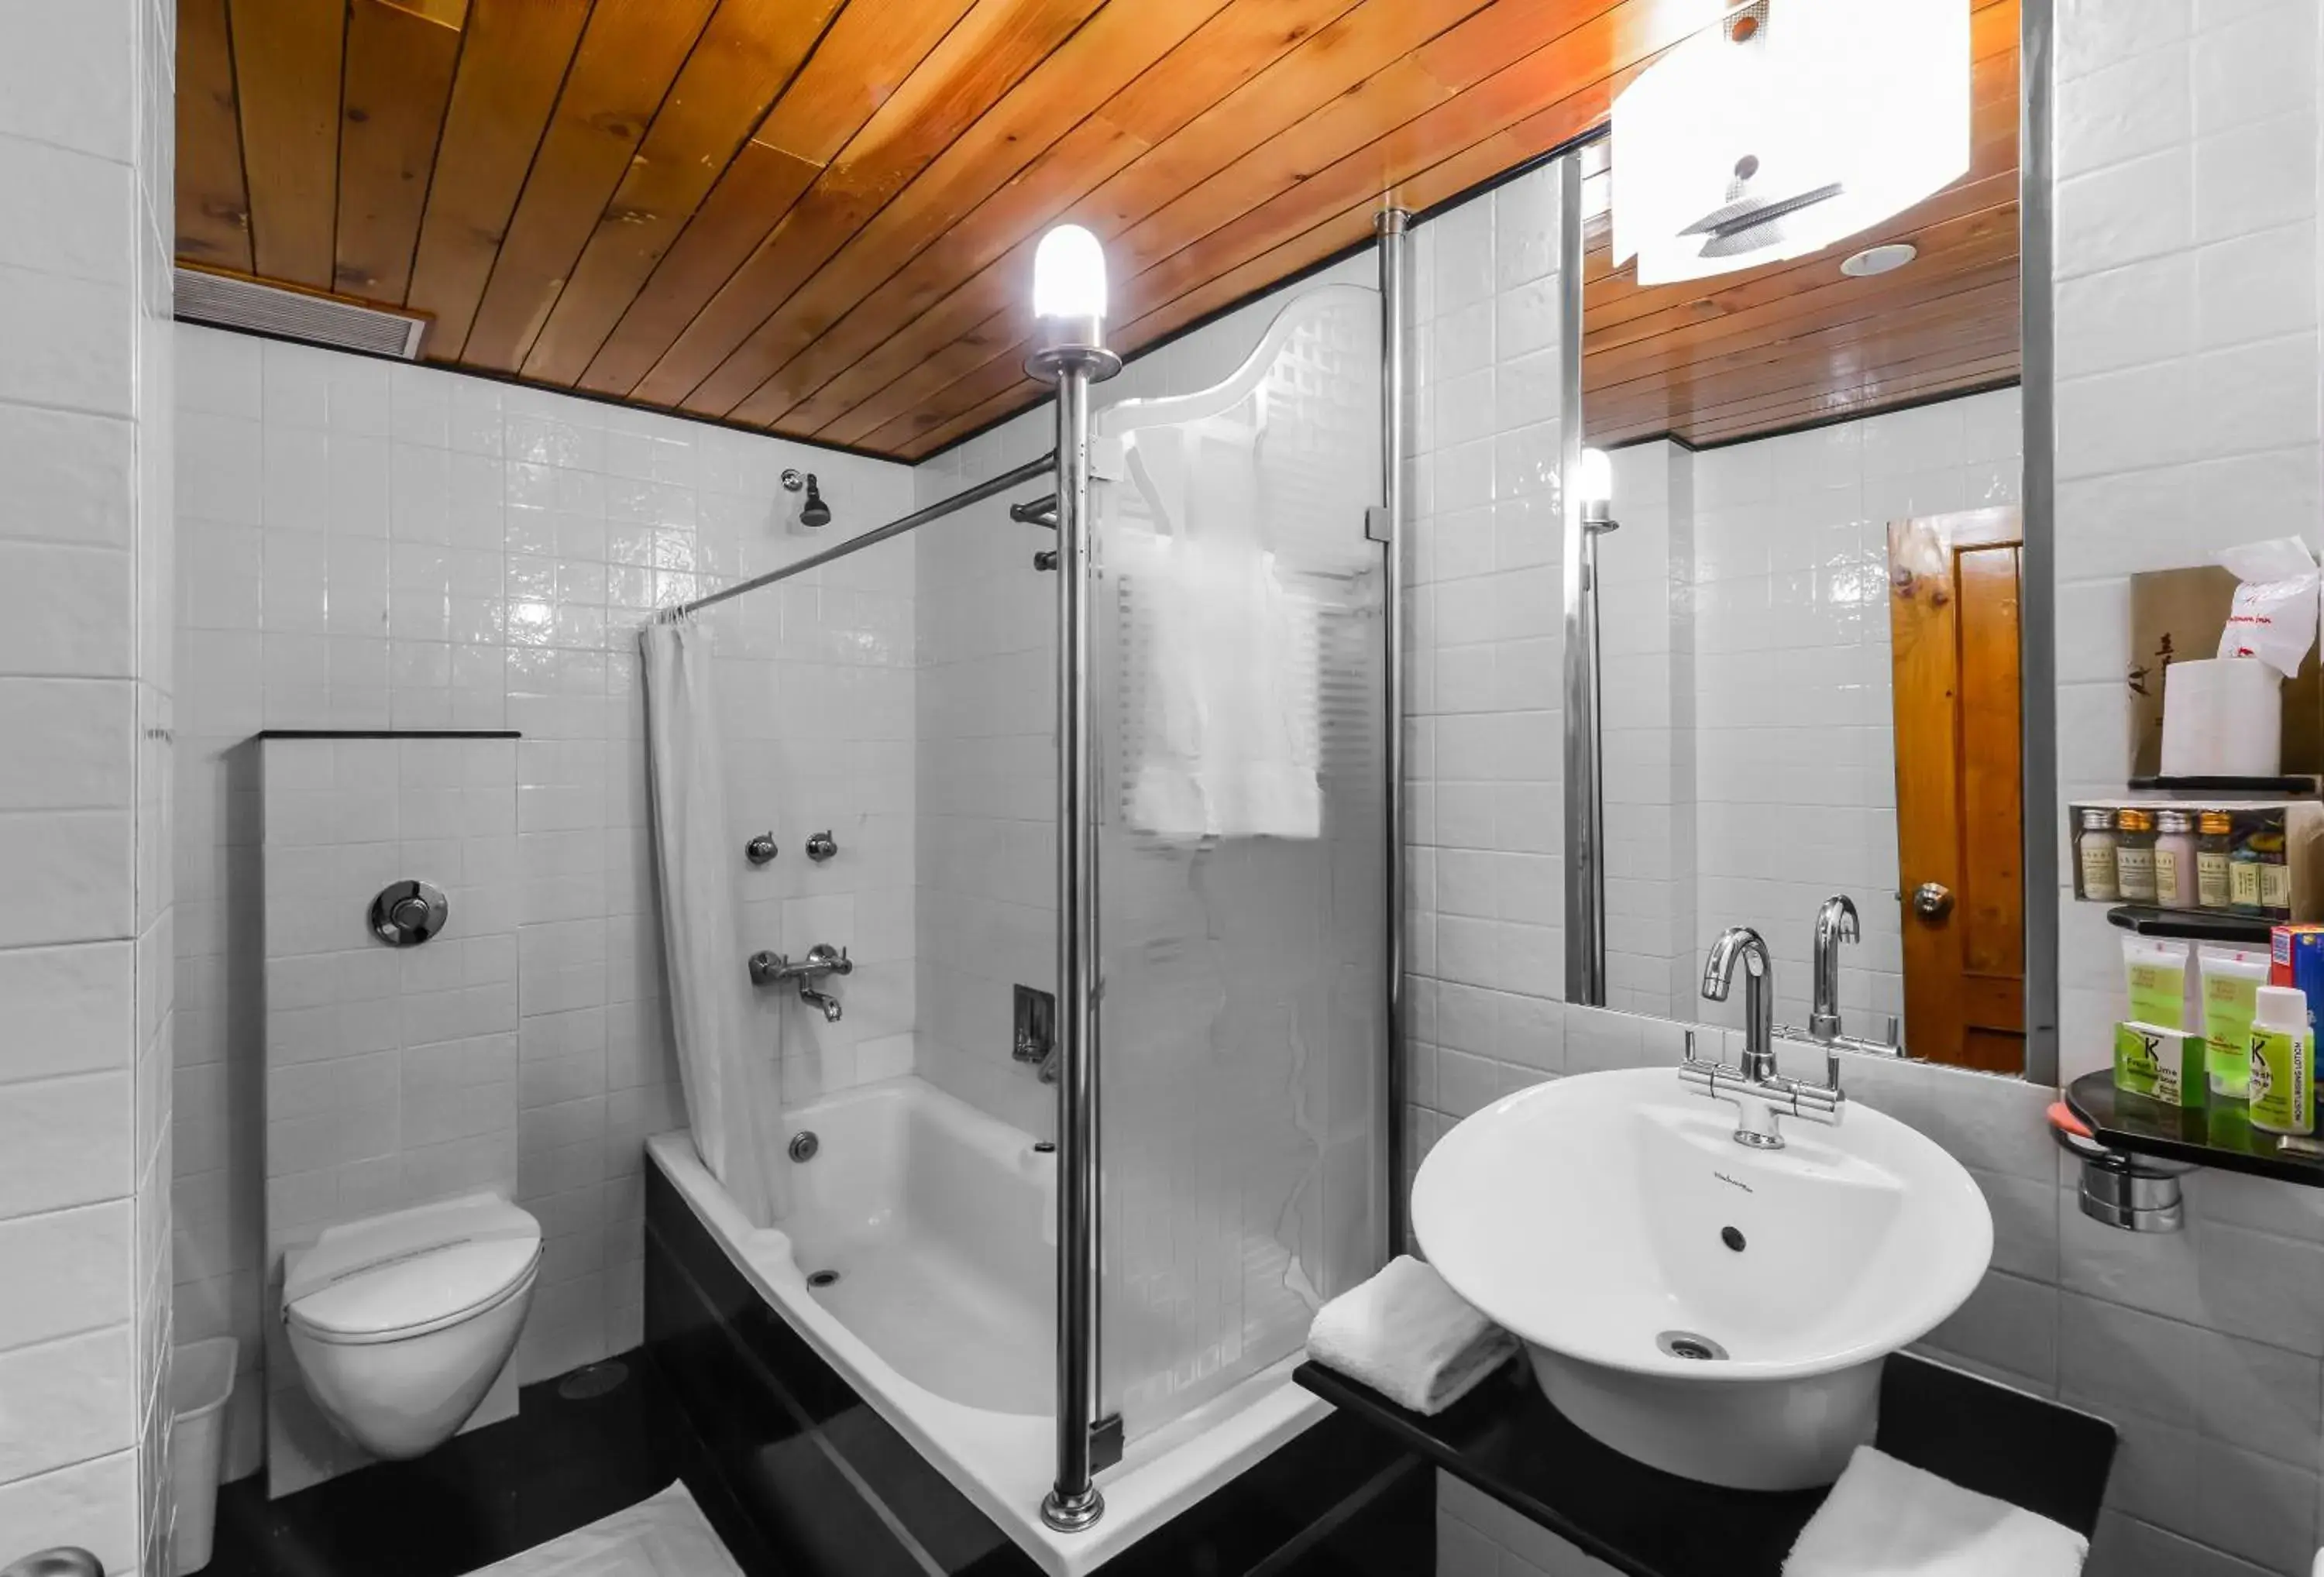 Toilet, Bathroom in Honeymoon Inn - Manali